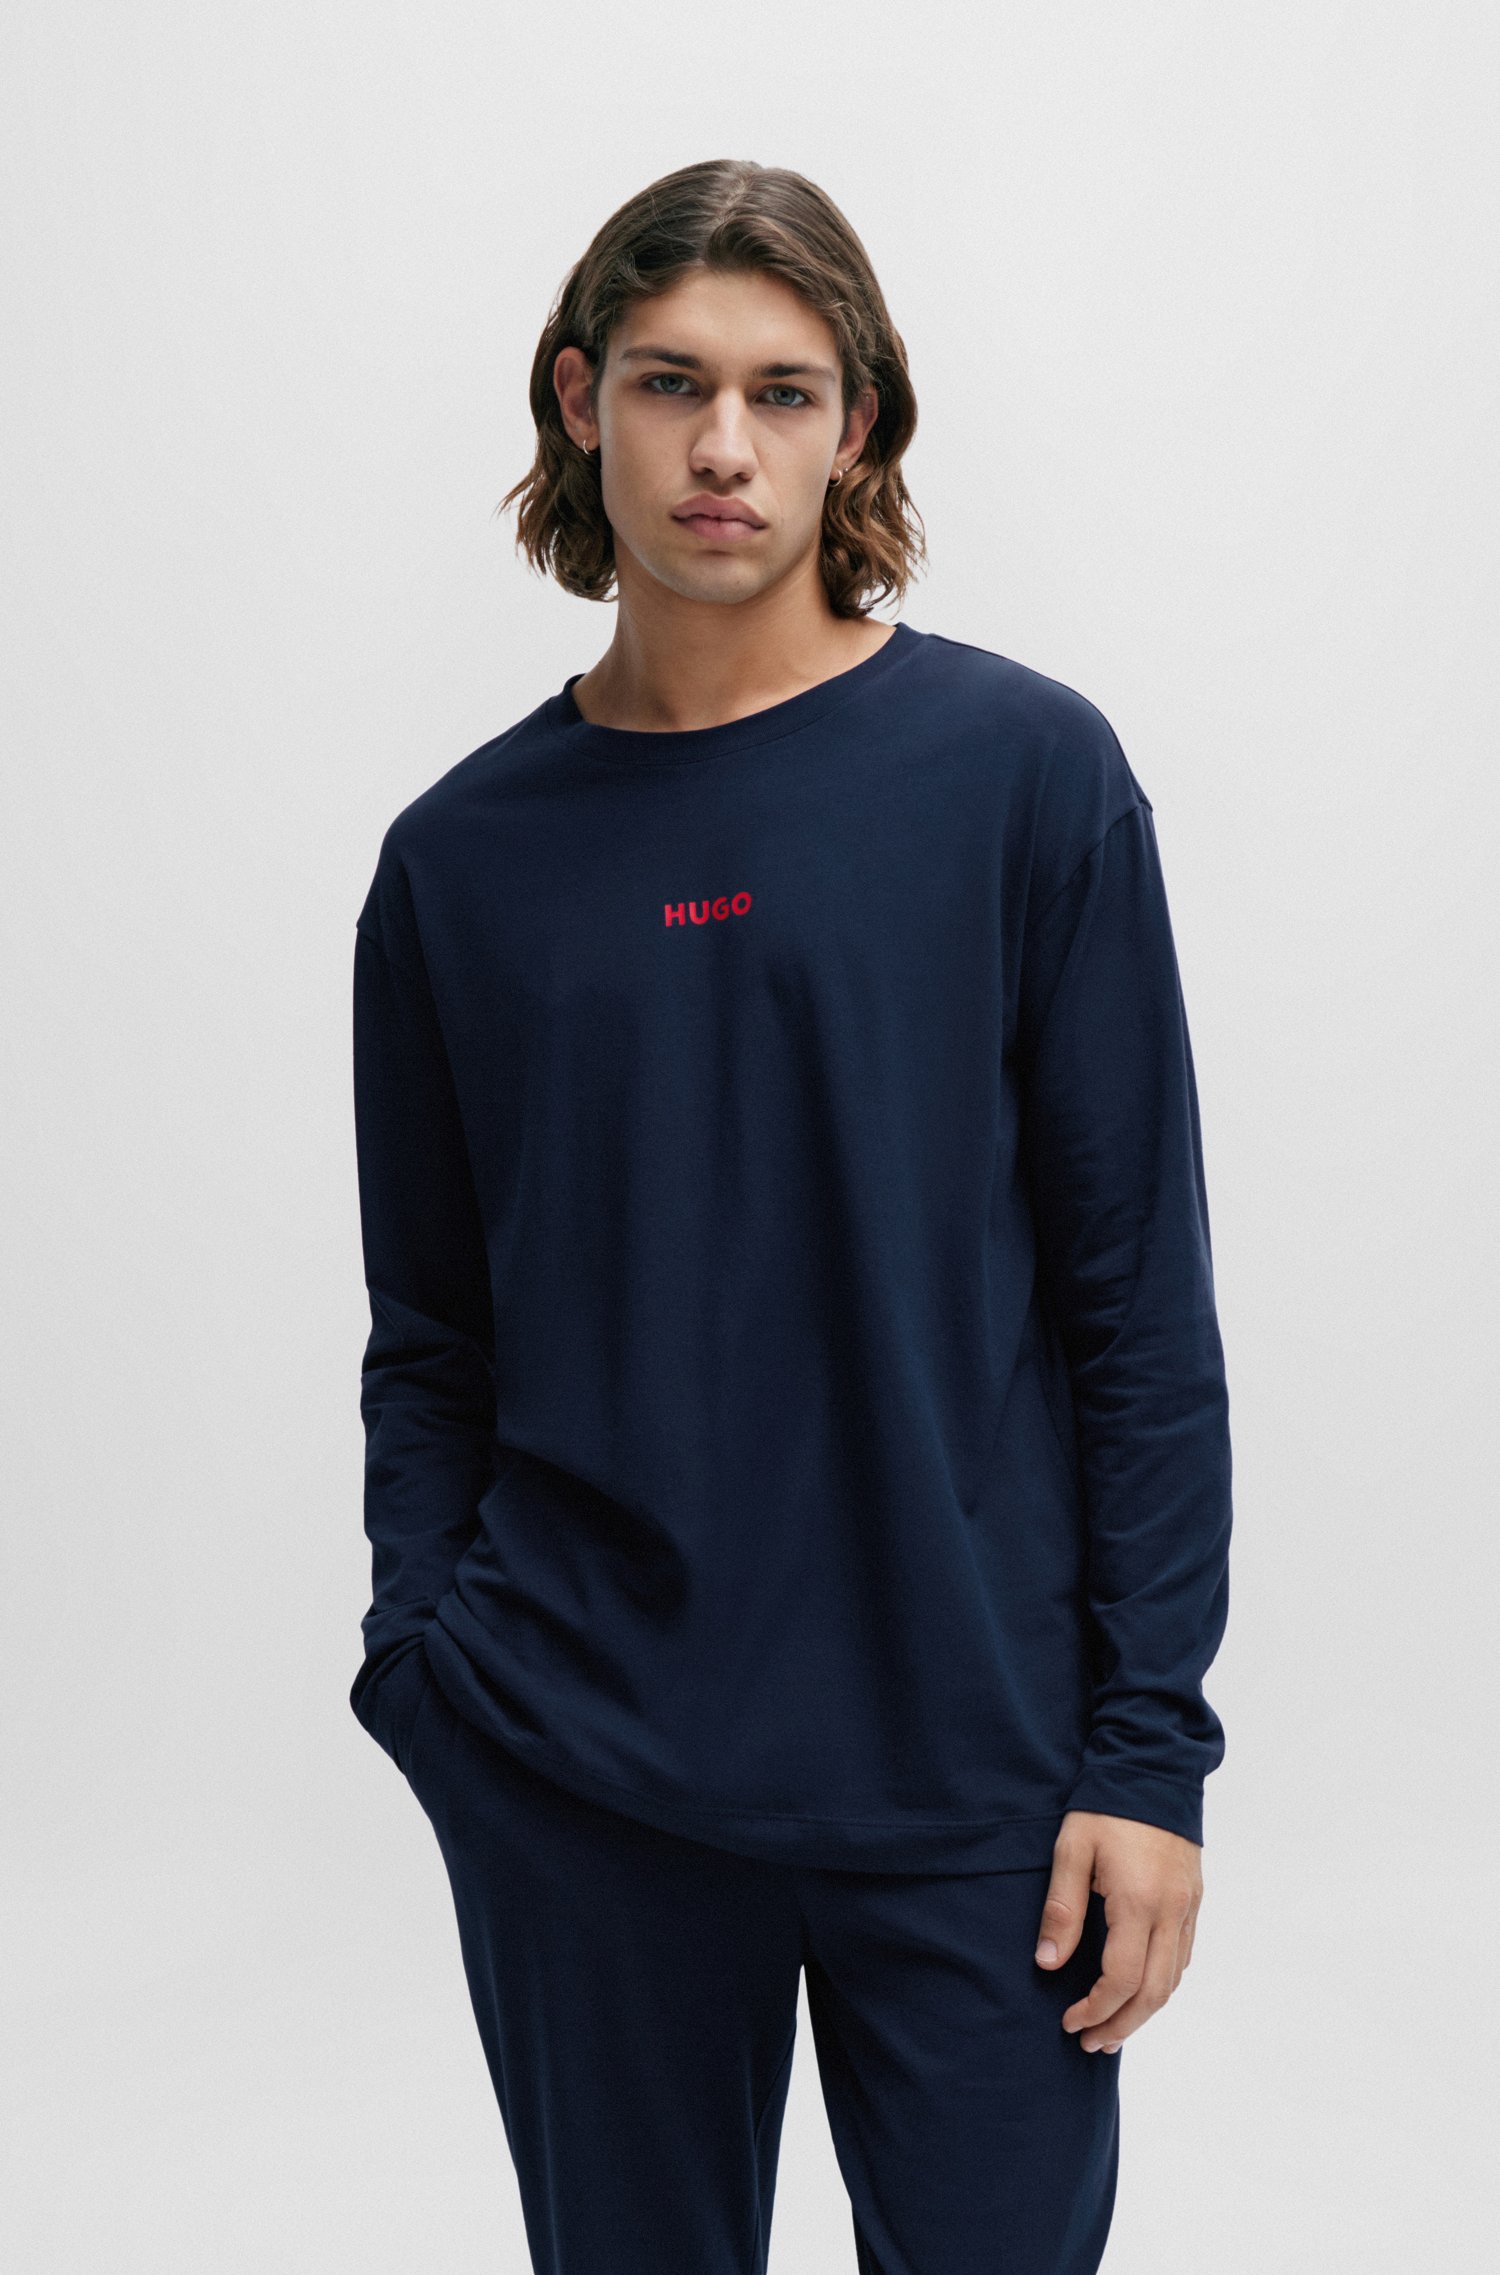 Camiseta de pijama relaxed fit algodón elástico con logo